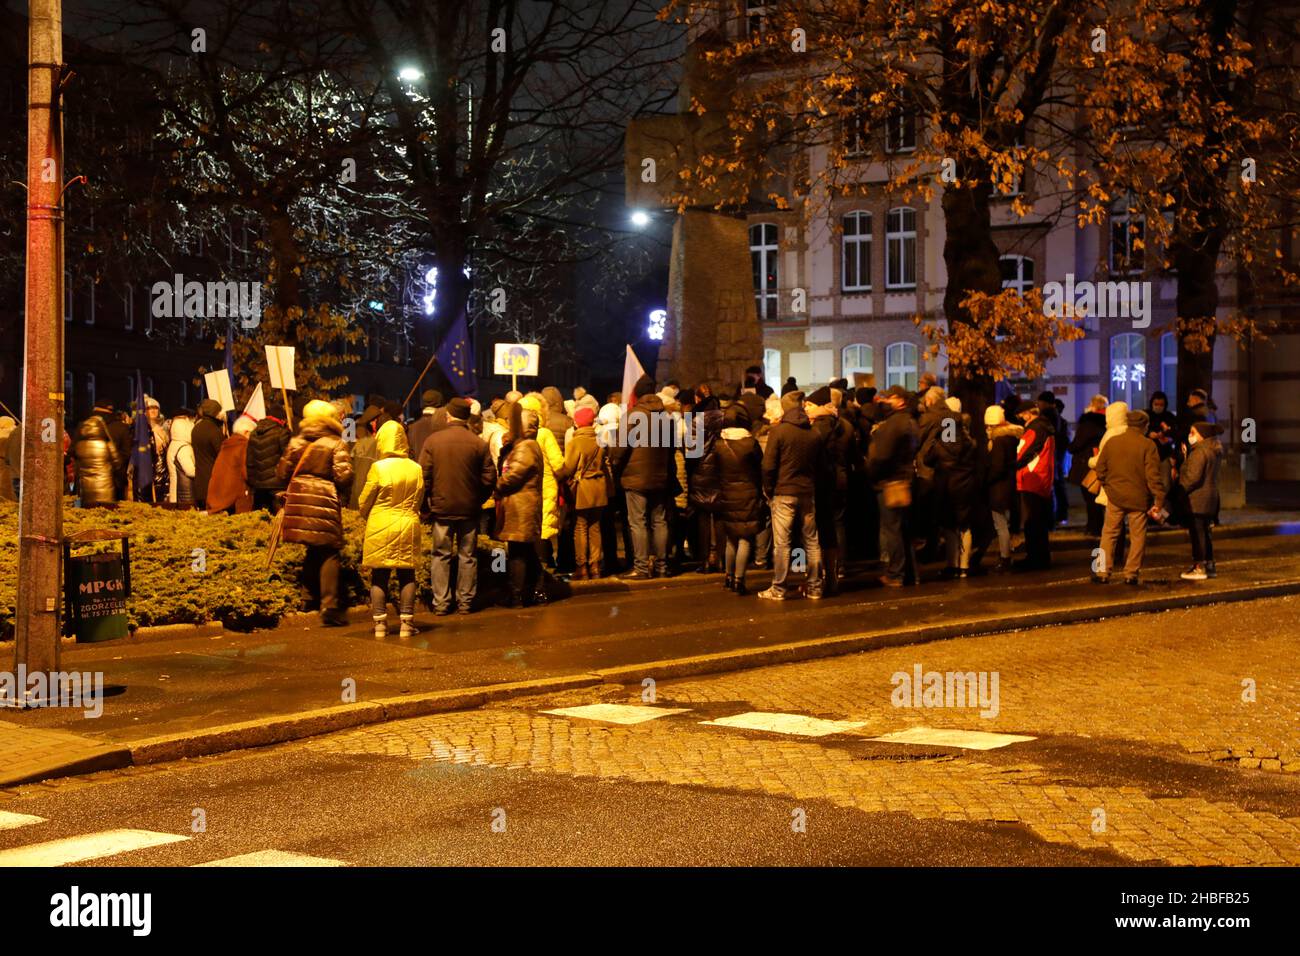 Protestveranstaltung a ganz Polen: VETO! FREIE MEDIEN, FREIE MENSCHEN, FREIES POLEN!protesta zur Verteidigung von TVN und Unterstützung der bürgerlich Foto Stock